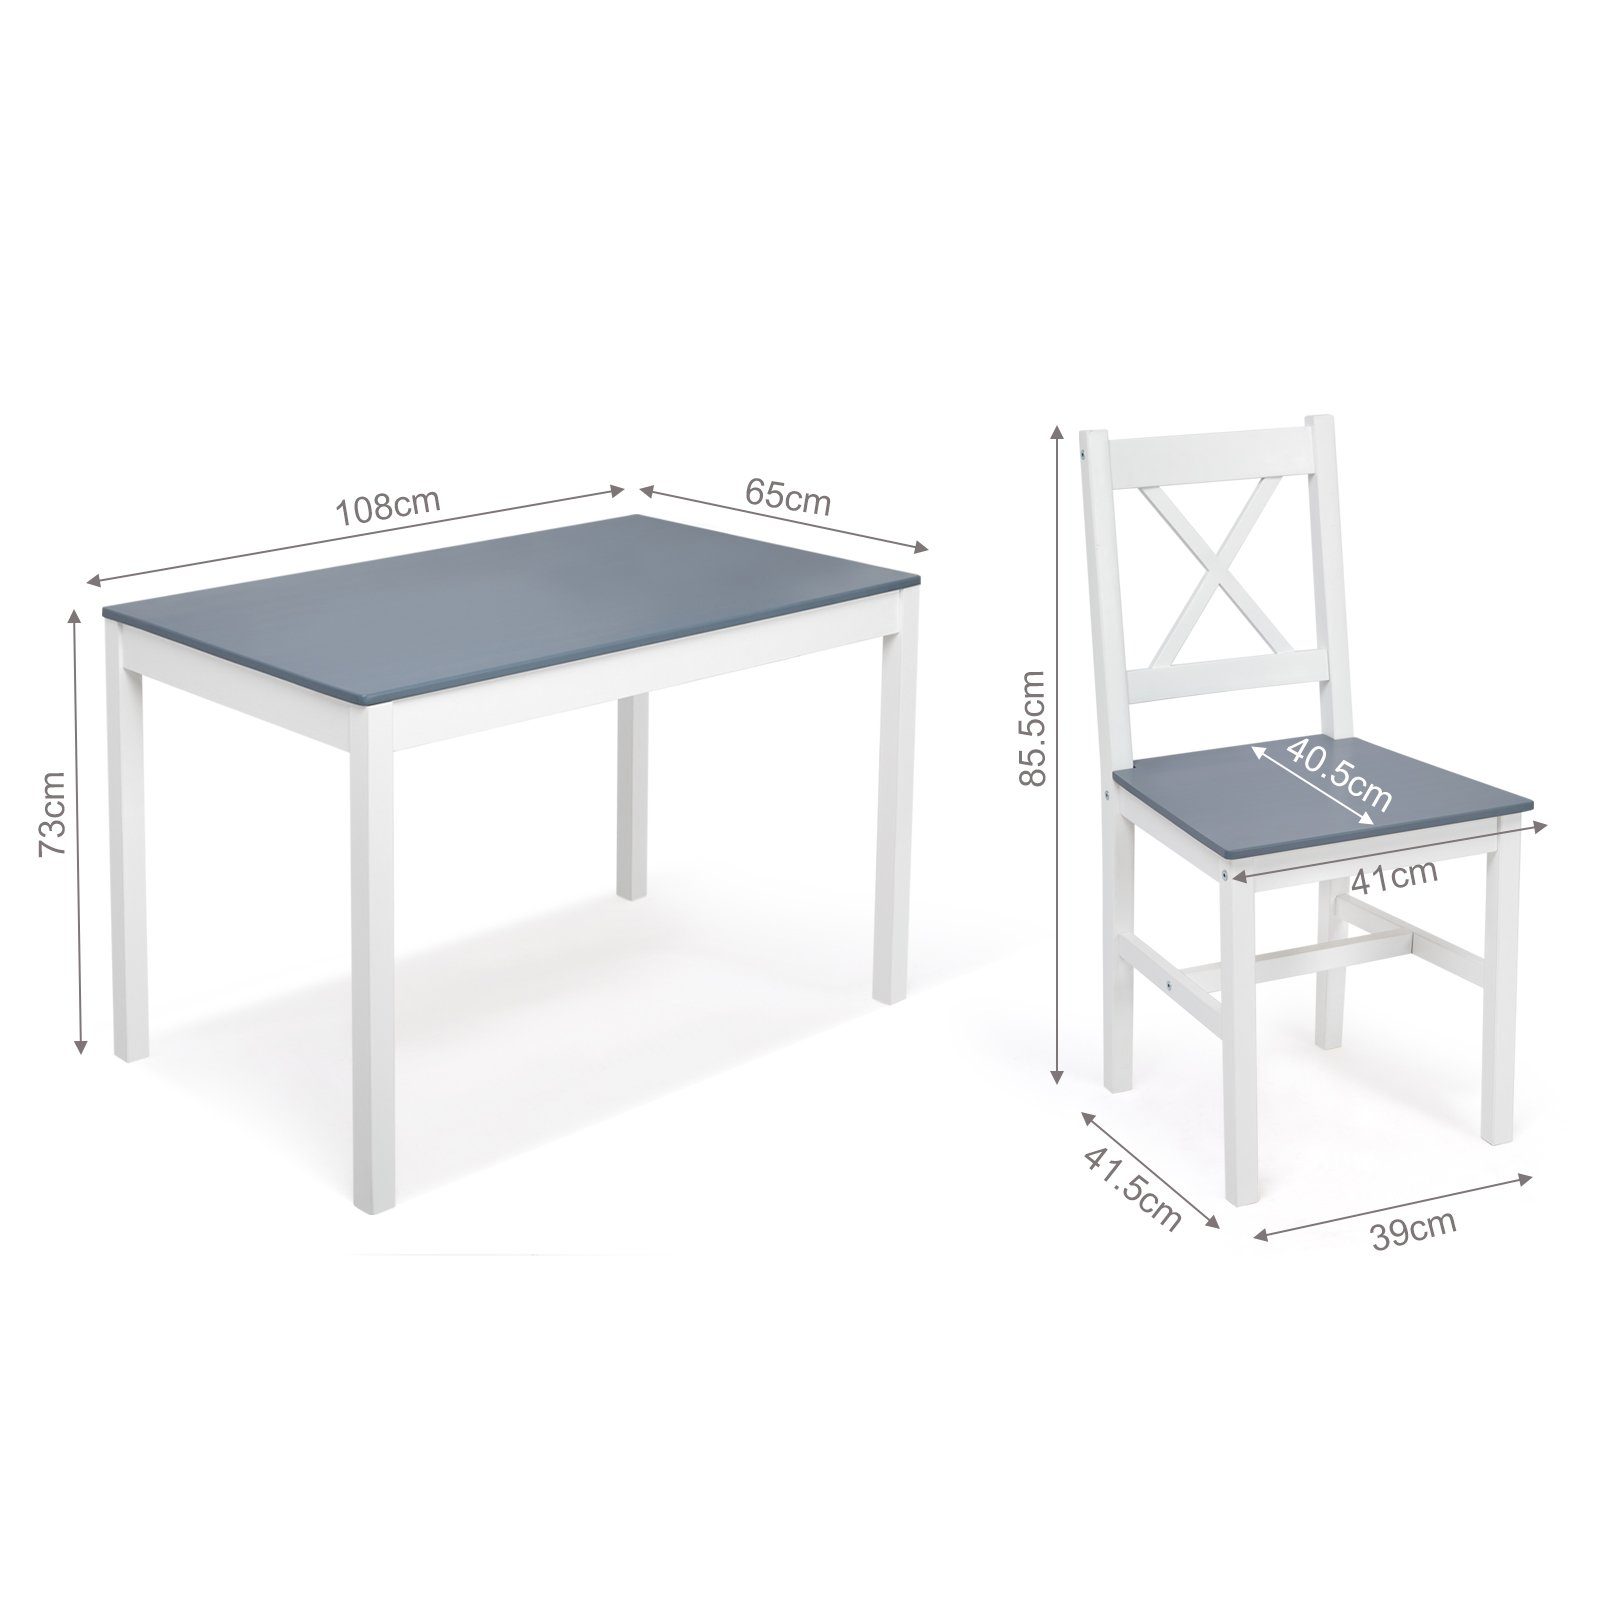 4 und Mondeer Essgruppe Marineblau Dunkelblau Stühle Tisch, 3-tlg), 1 (Set,